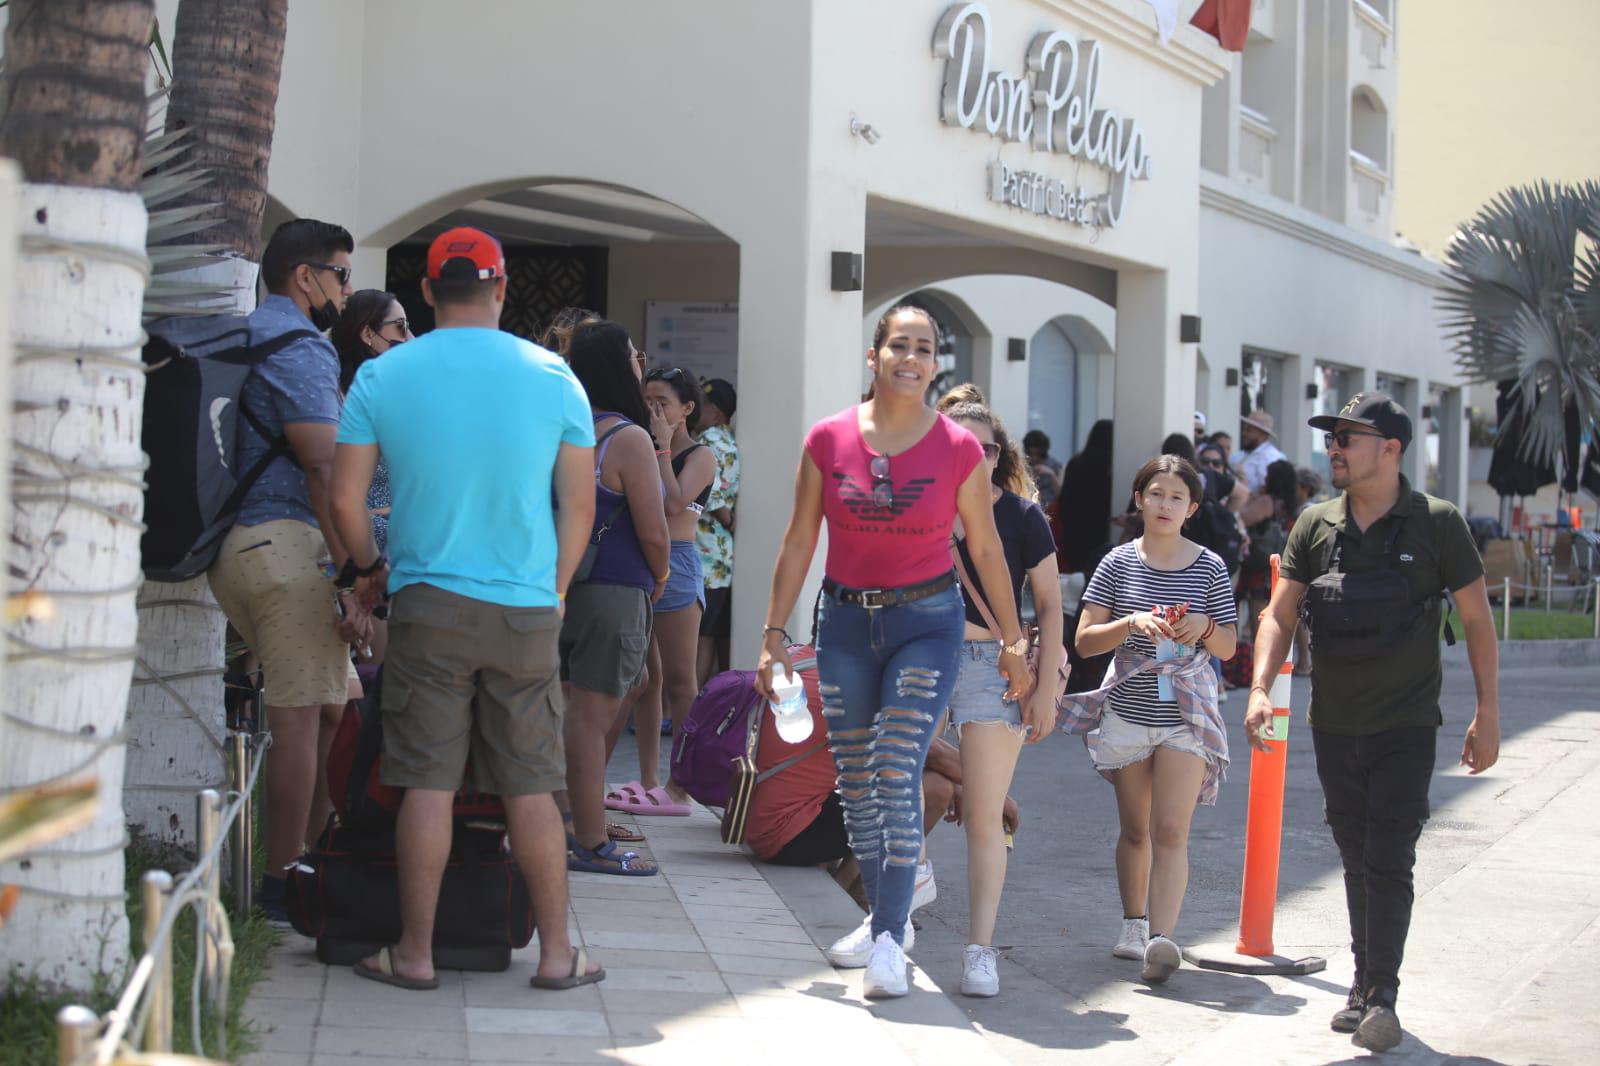 $!En Mazatlán, un 32% de los cuartos se rentan por aplicación; la mayoría llegan a hotel, dice Sedectur